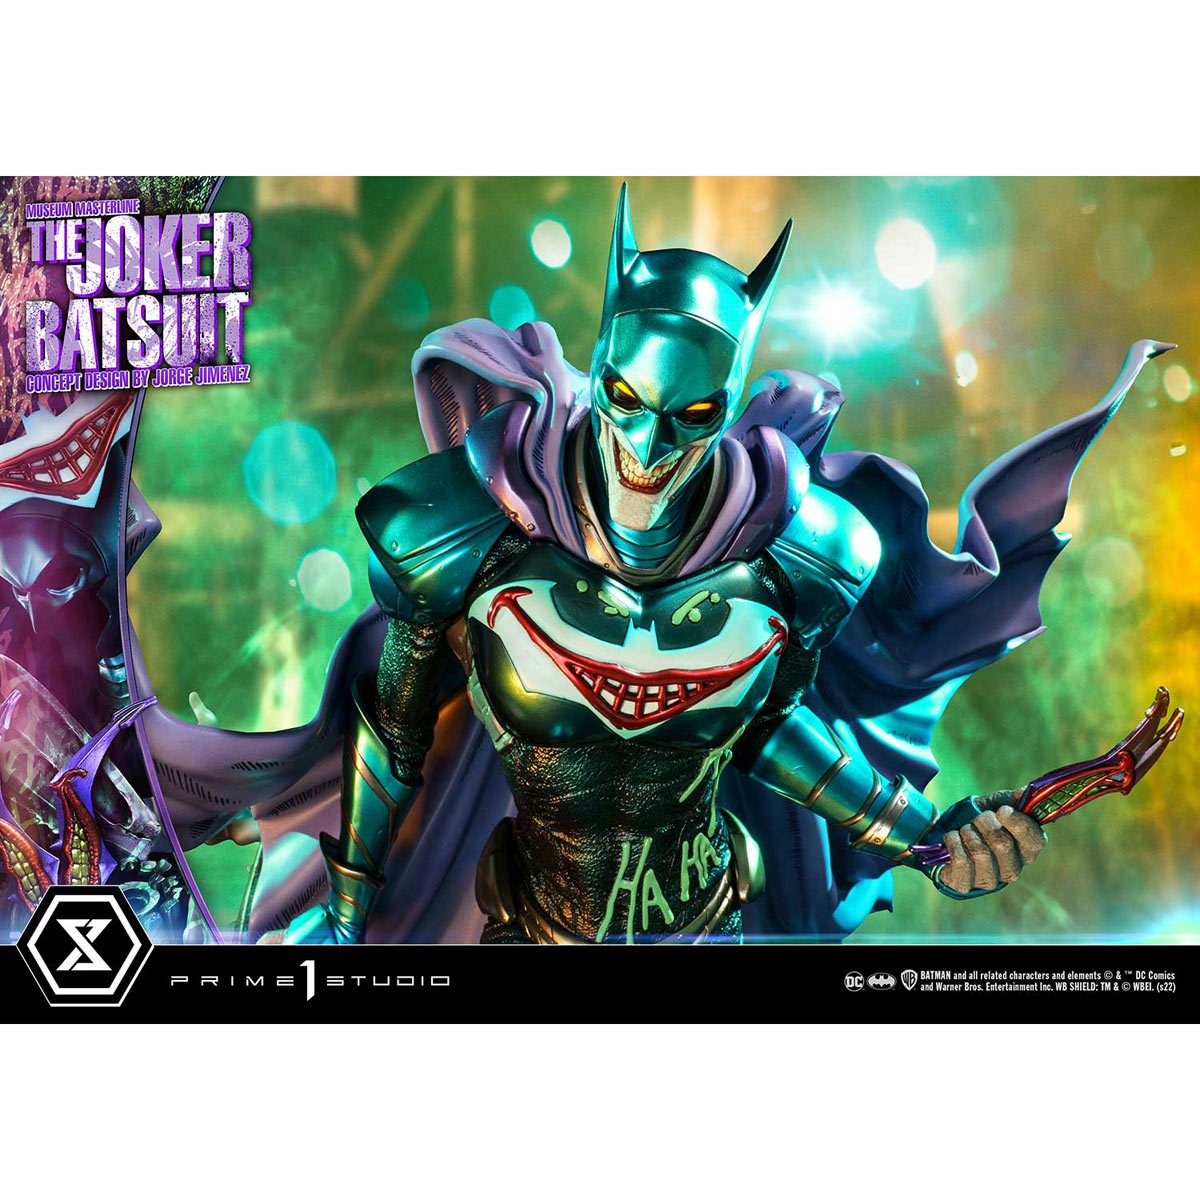 Joker Batsuit Concept Design by Jorge Jimenez Museum Masterline Bonus ...